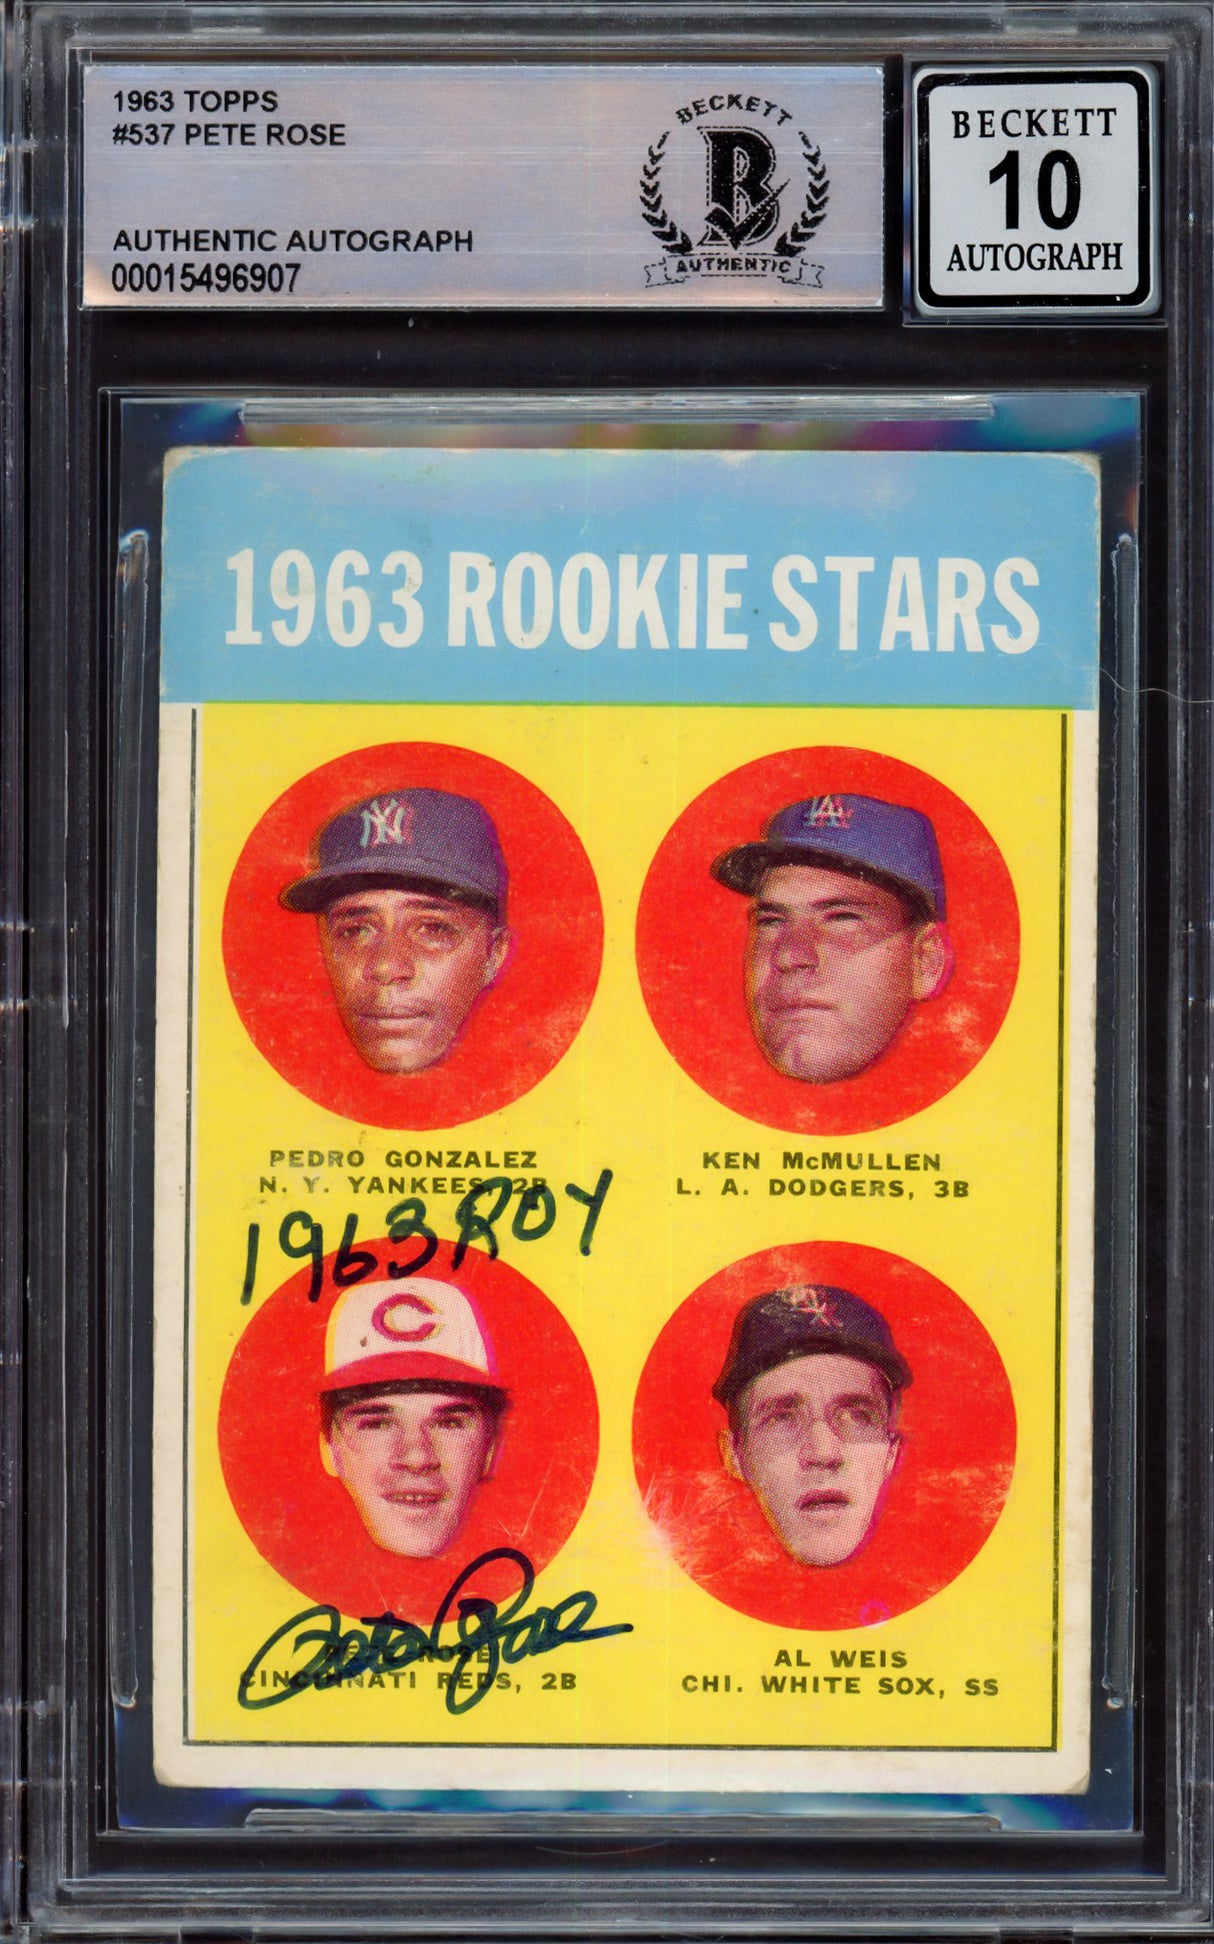 Pete Rose Autographed 1963 Topps Rookie Card #537 Cincinnati Reds Auto Grade Gem Mint 10 "1963 ROY" Beckett BAS #15496907